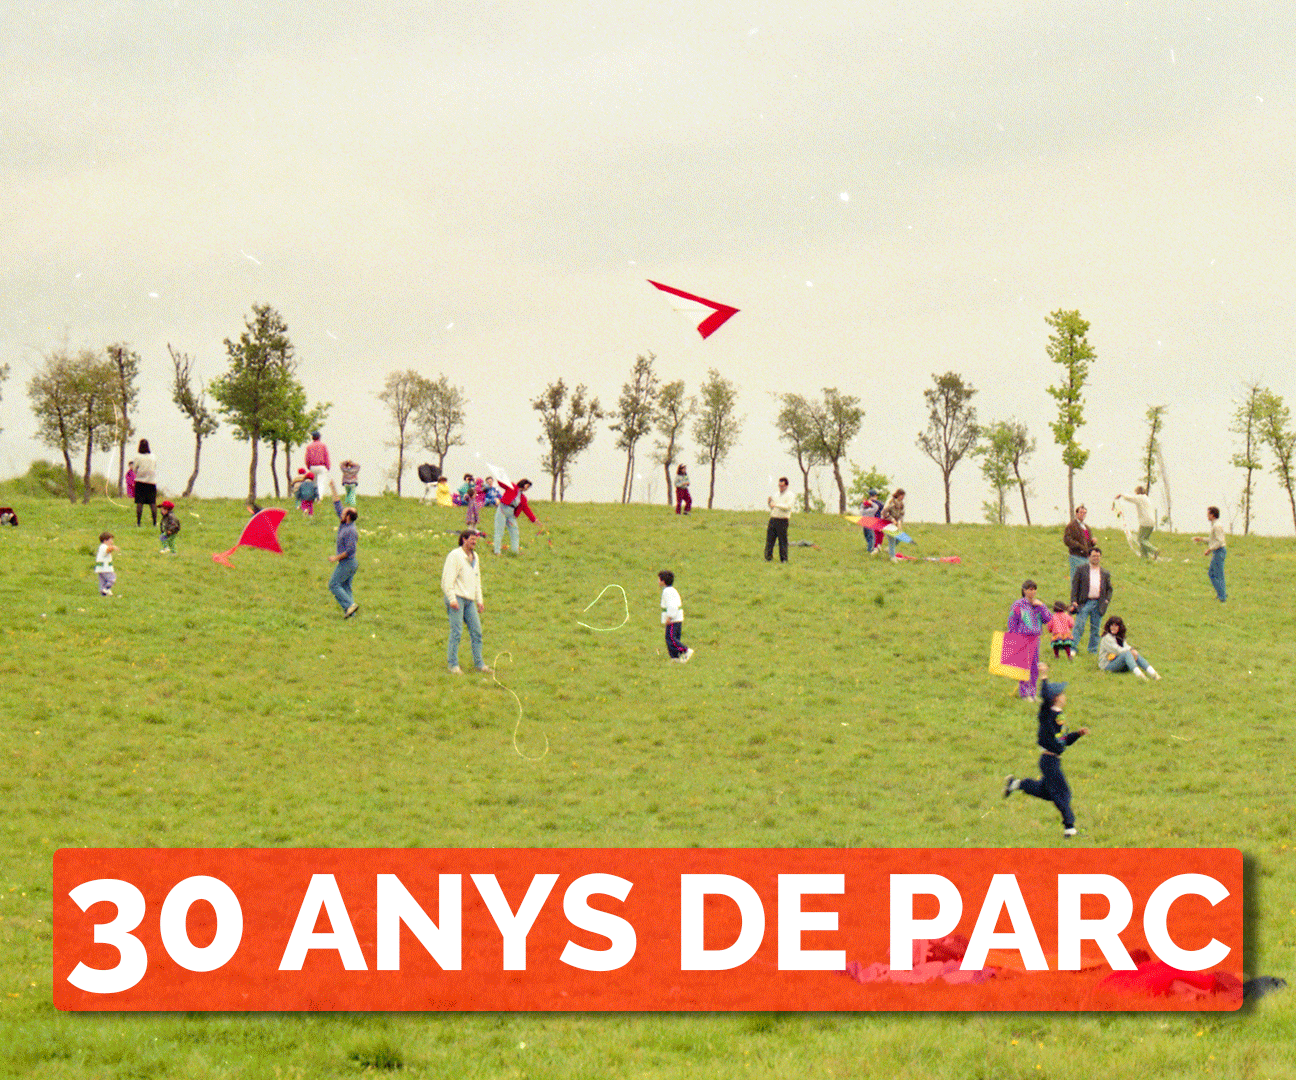 30 anys de Parc Catalunya